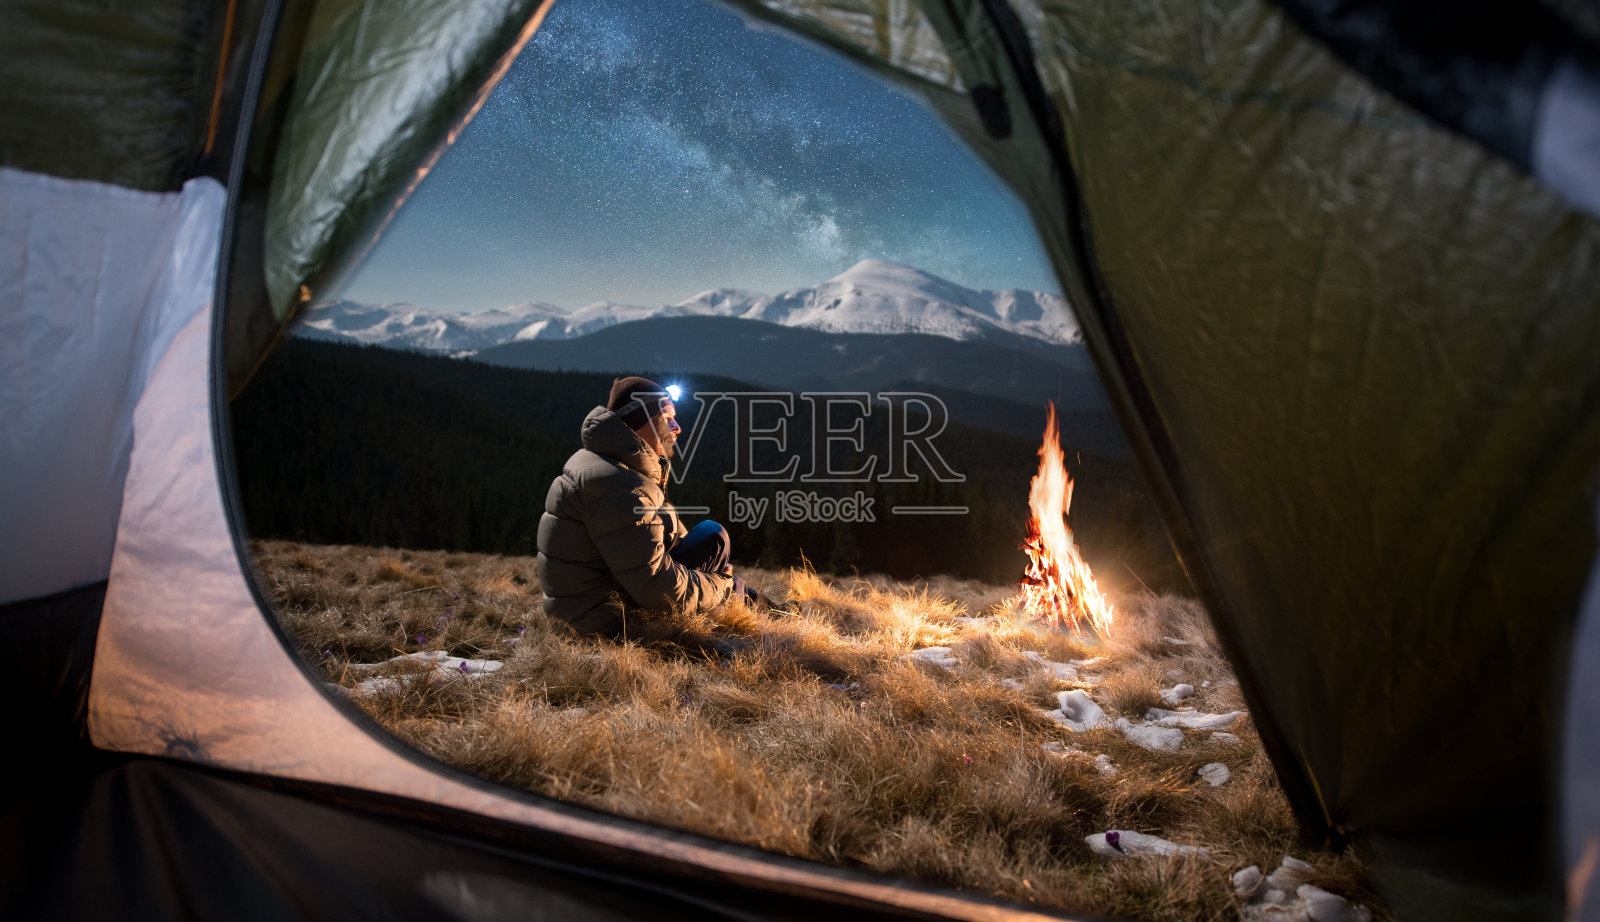 从帐篷里面望去，这位男游客正在他的帐篷里休息。在满是星星和银河的美丽夜空下，一个带着头灯的男人坐在篝火旁照片摄影图片